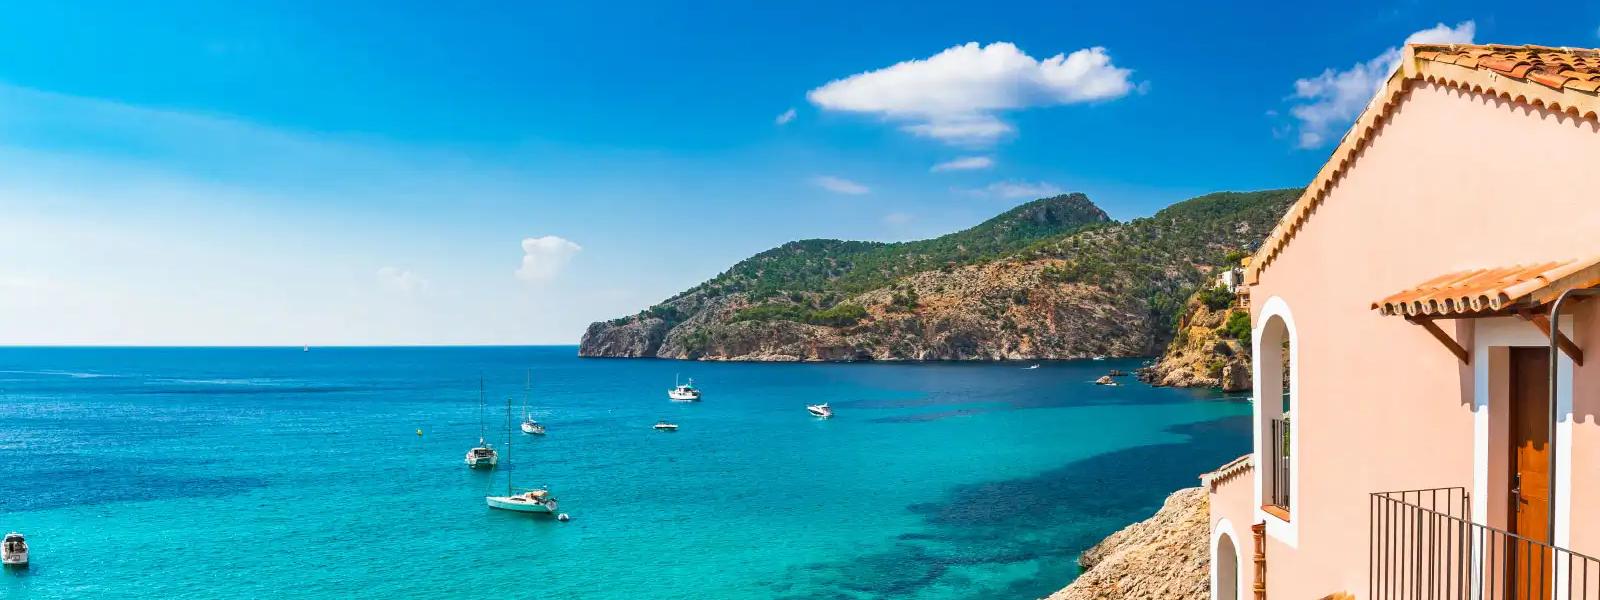 Küstenstädte und historische Orte am Meer – wo ist Kroatien am schönsten? - atraveo